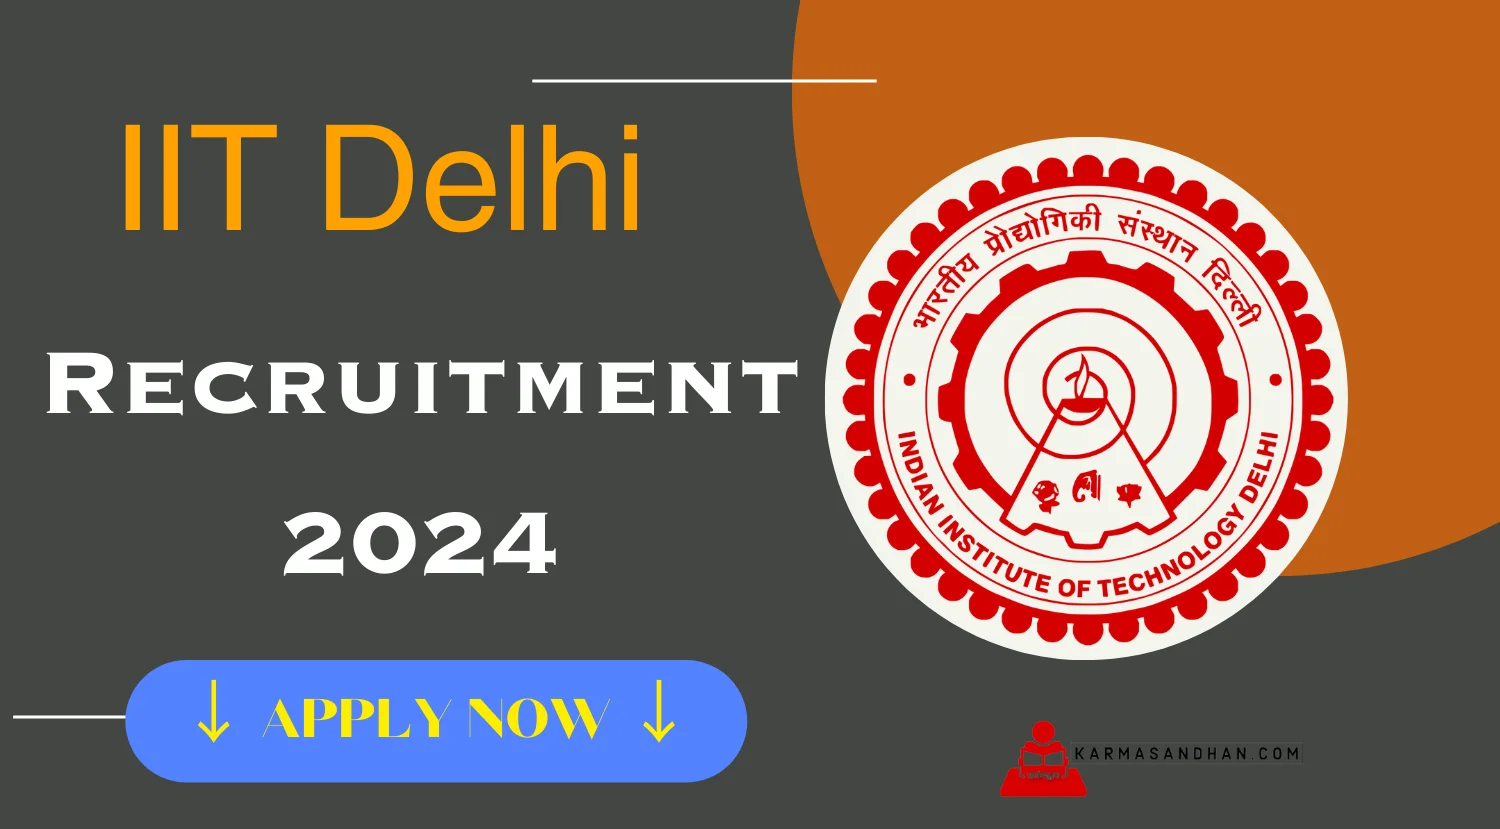 IIT Delhi Principal Project Scientist Recruitment 2024